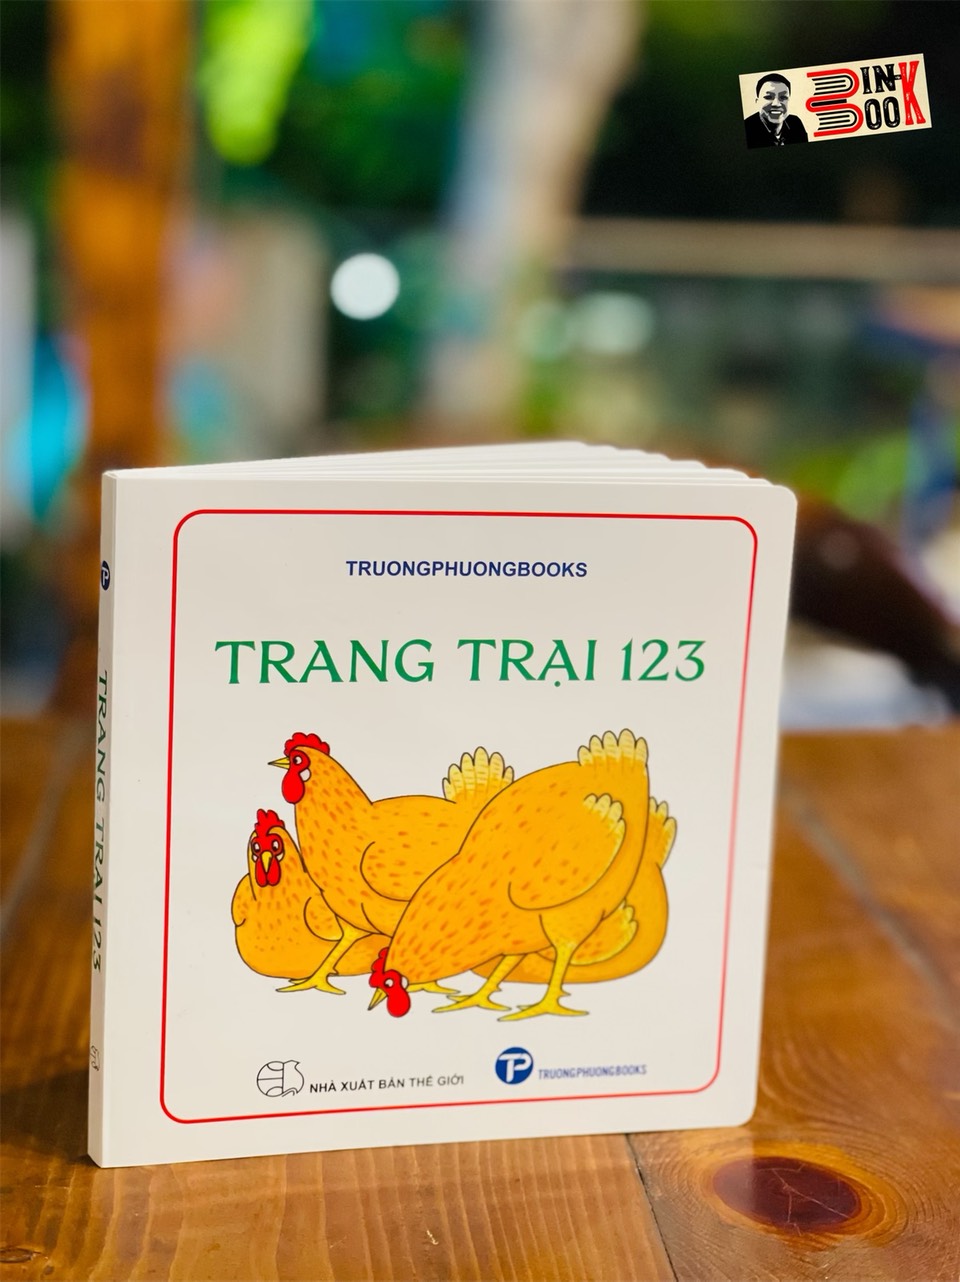 (Sách tương tác, minh họa in màu) TRANG TRẠI 123 - Nhiểu tác giả - TruonPhuongbooks – bìa mềm